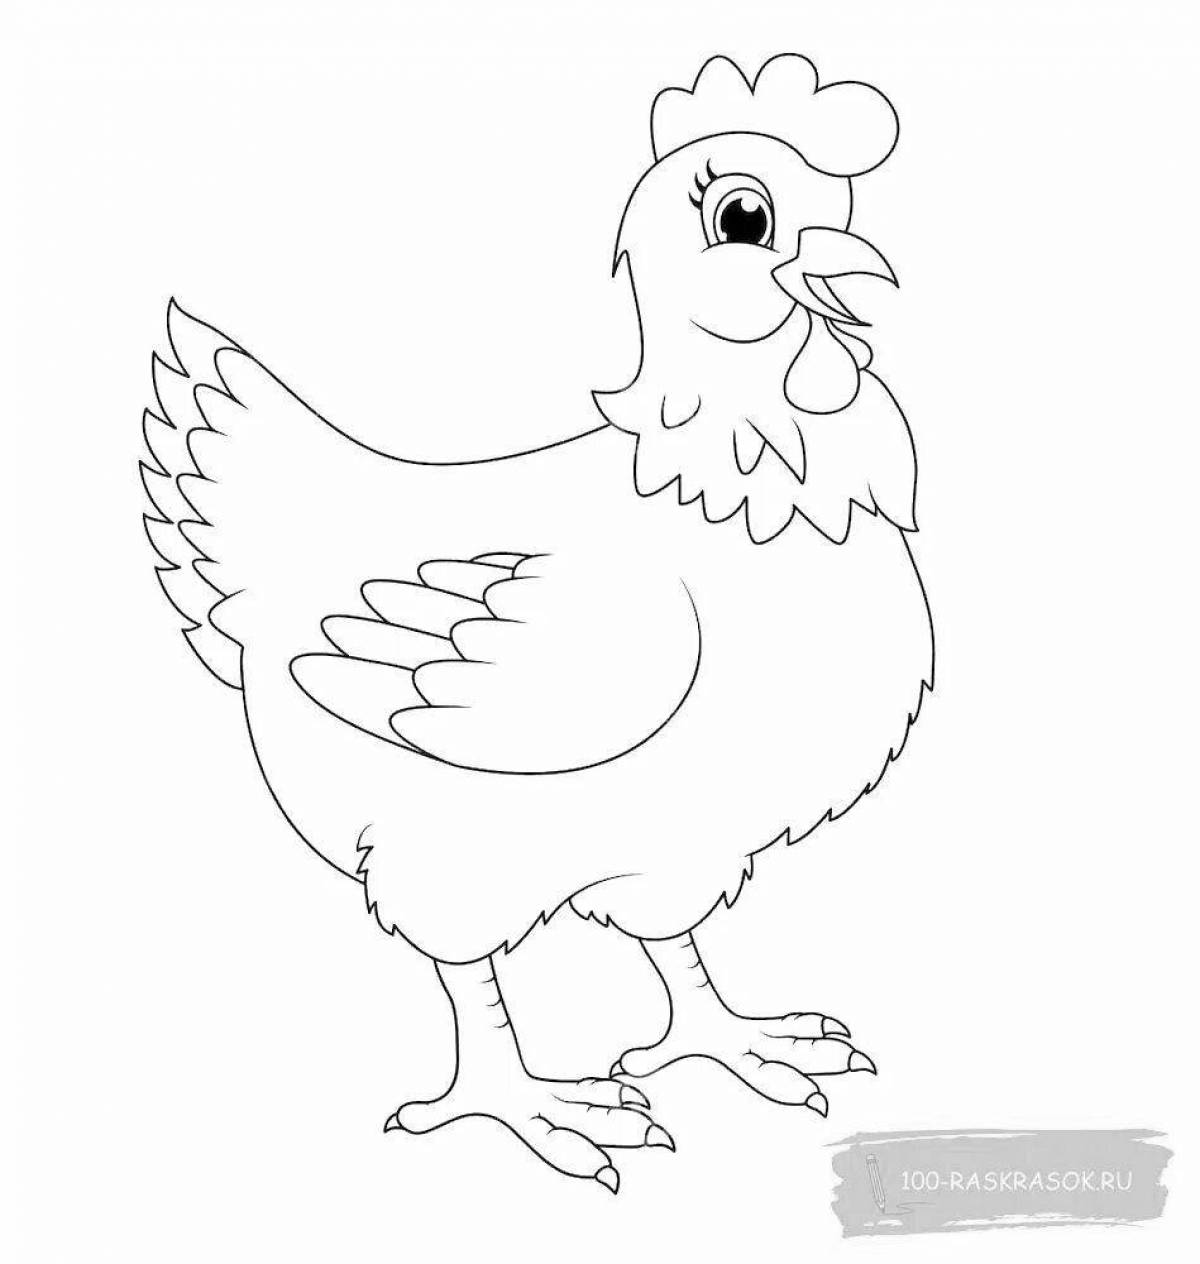 Яркая раскраска цыпленка для детей 2-3 лет